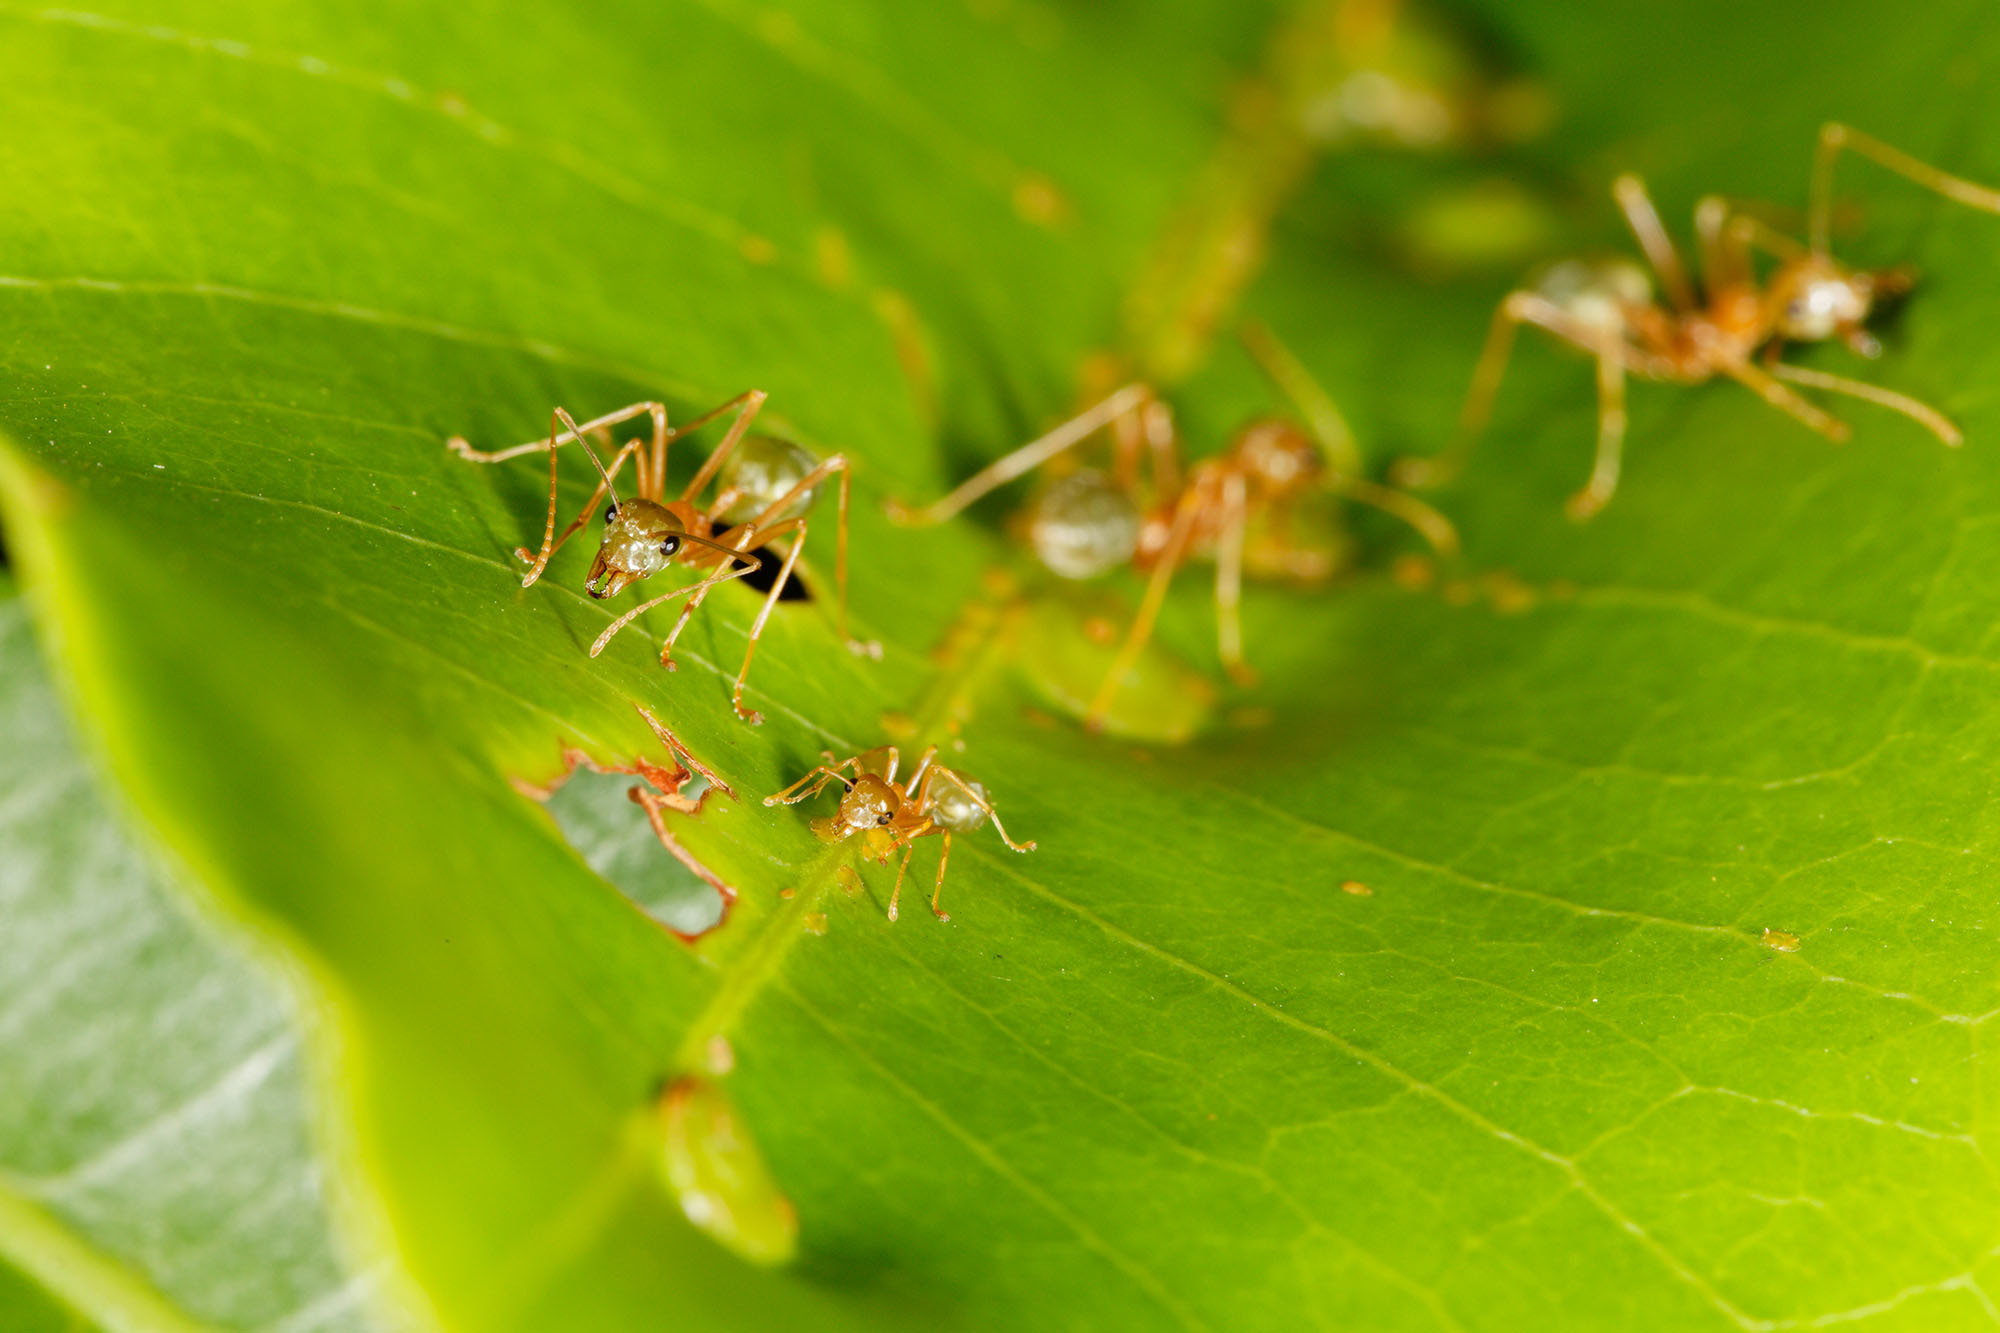 ants media - Encyclopedia of Life